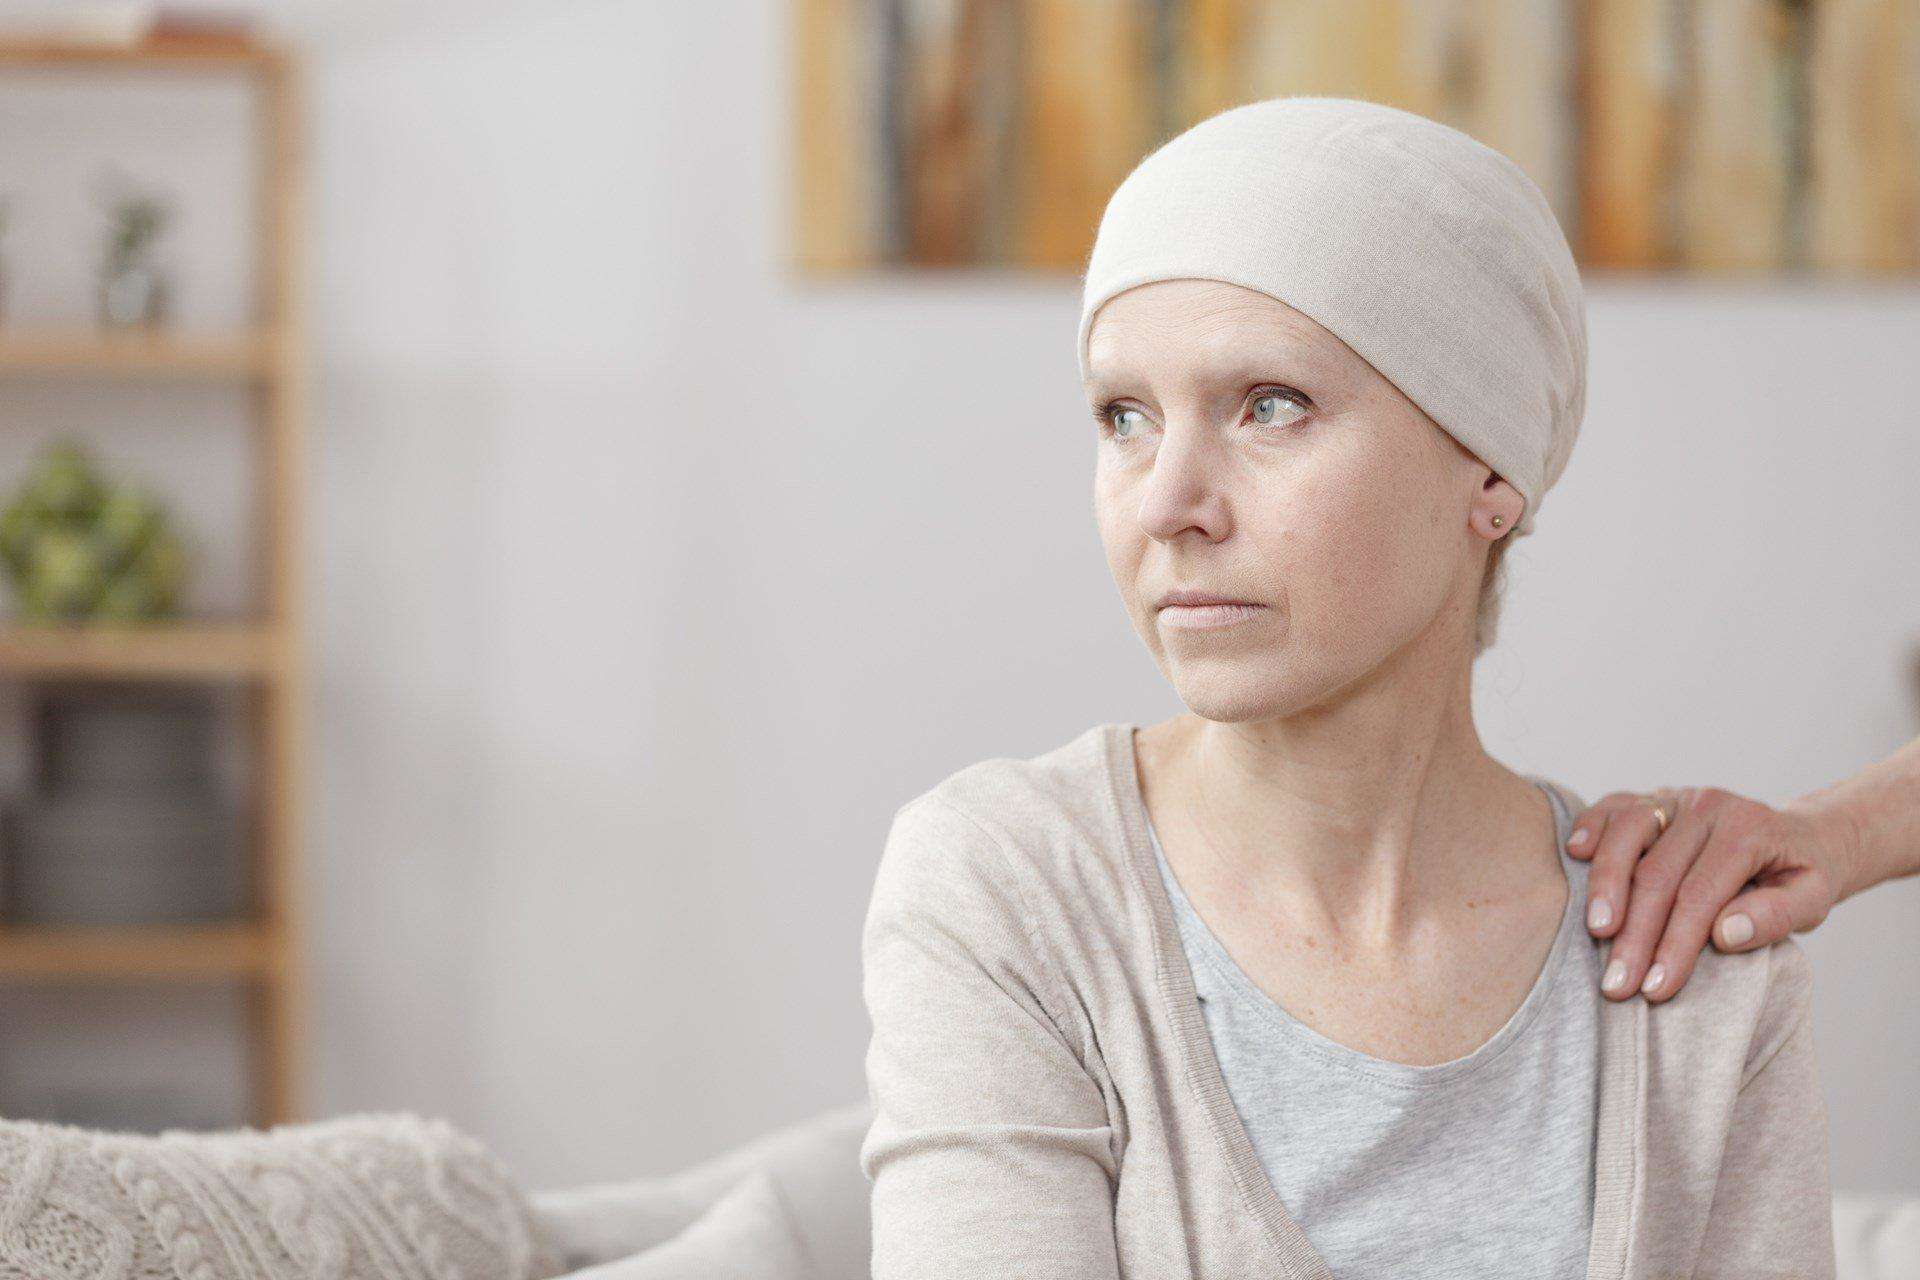 Breast cancer:विटामिन—डी की कमी से बढ़ता ब्रेस्ट कैंसर का खतरा, इन बातों का ध्यान रखकर करें बचाव